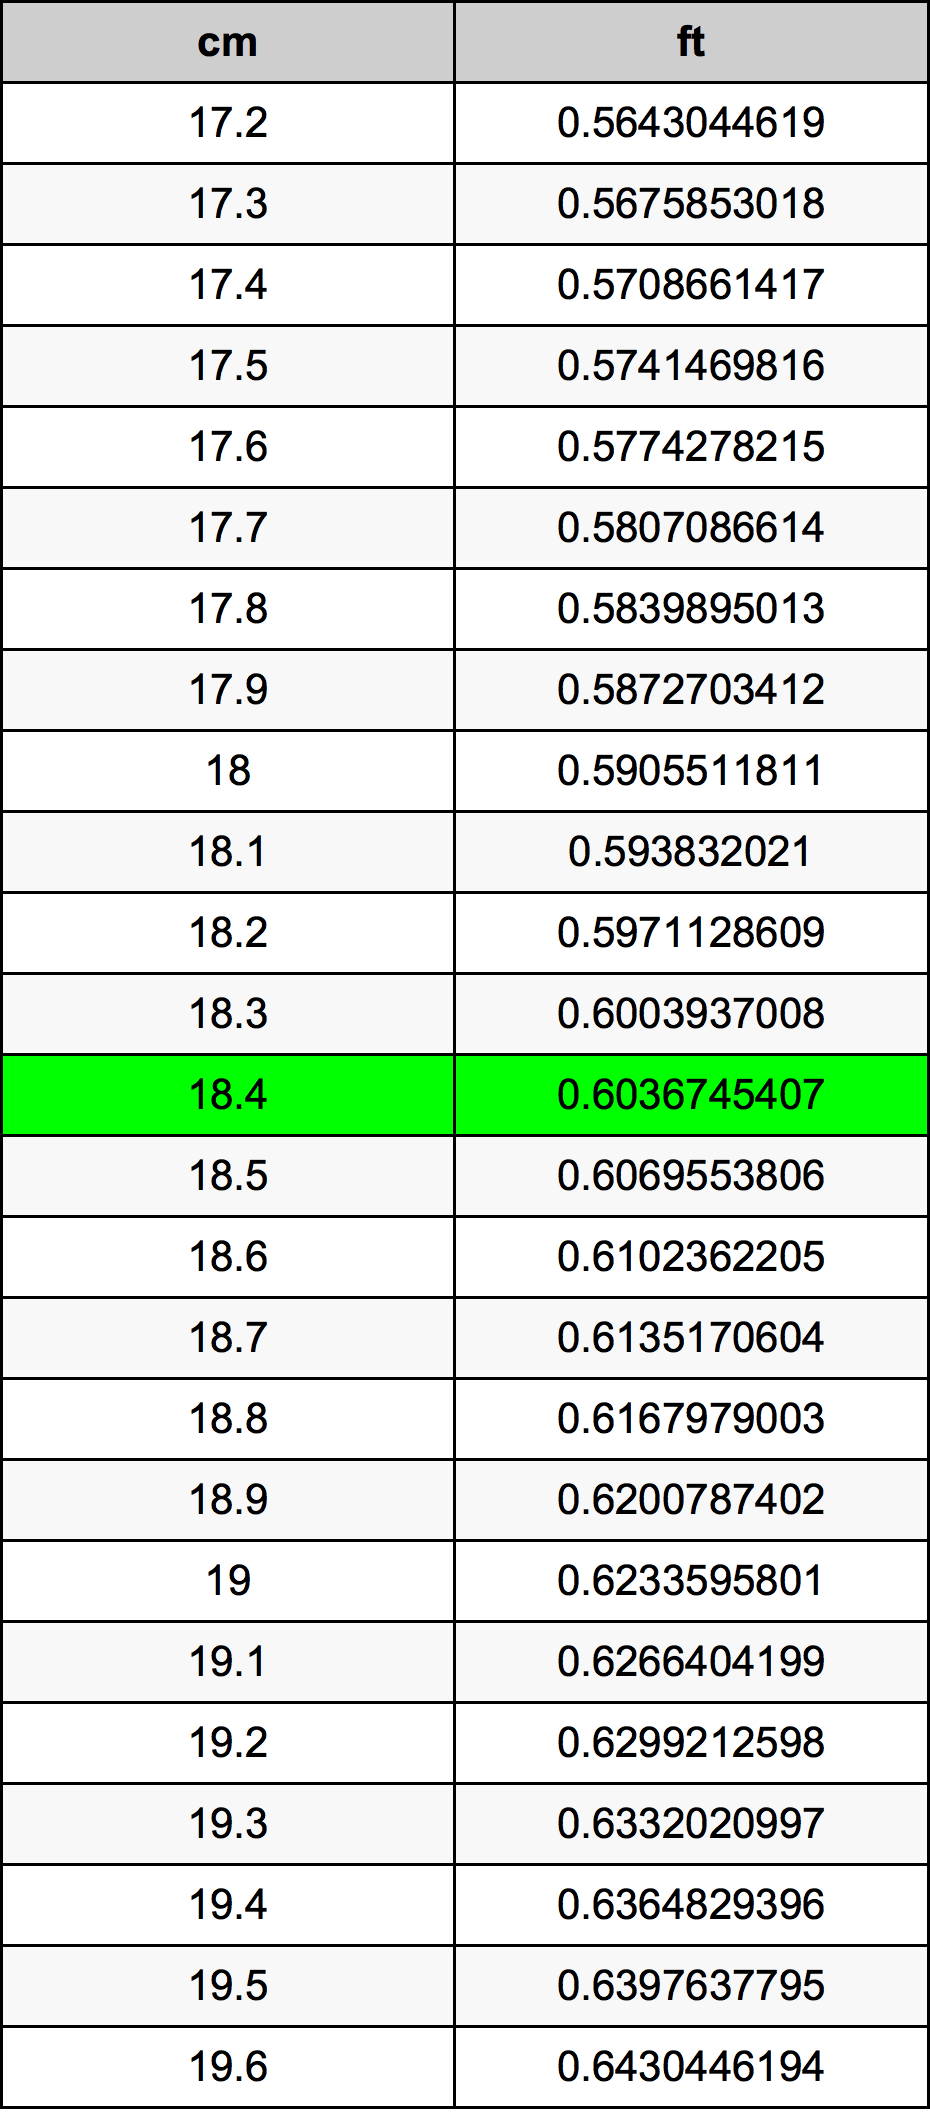 18.4 Centiméter átszámítási táblázat